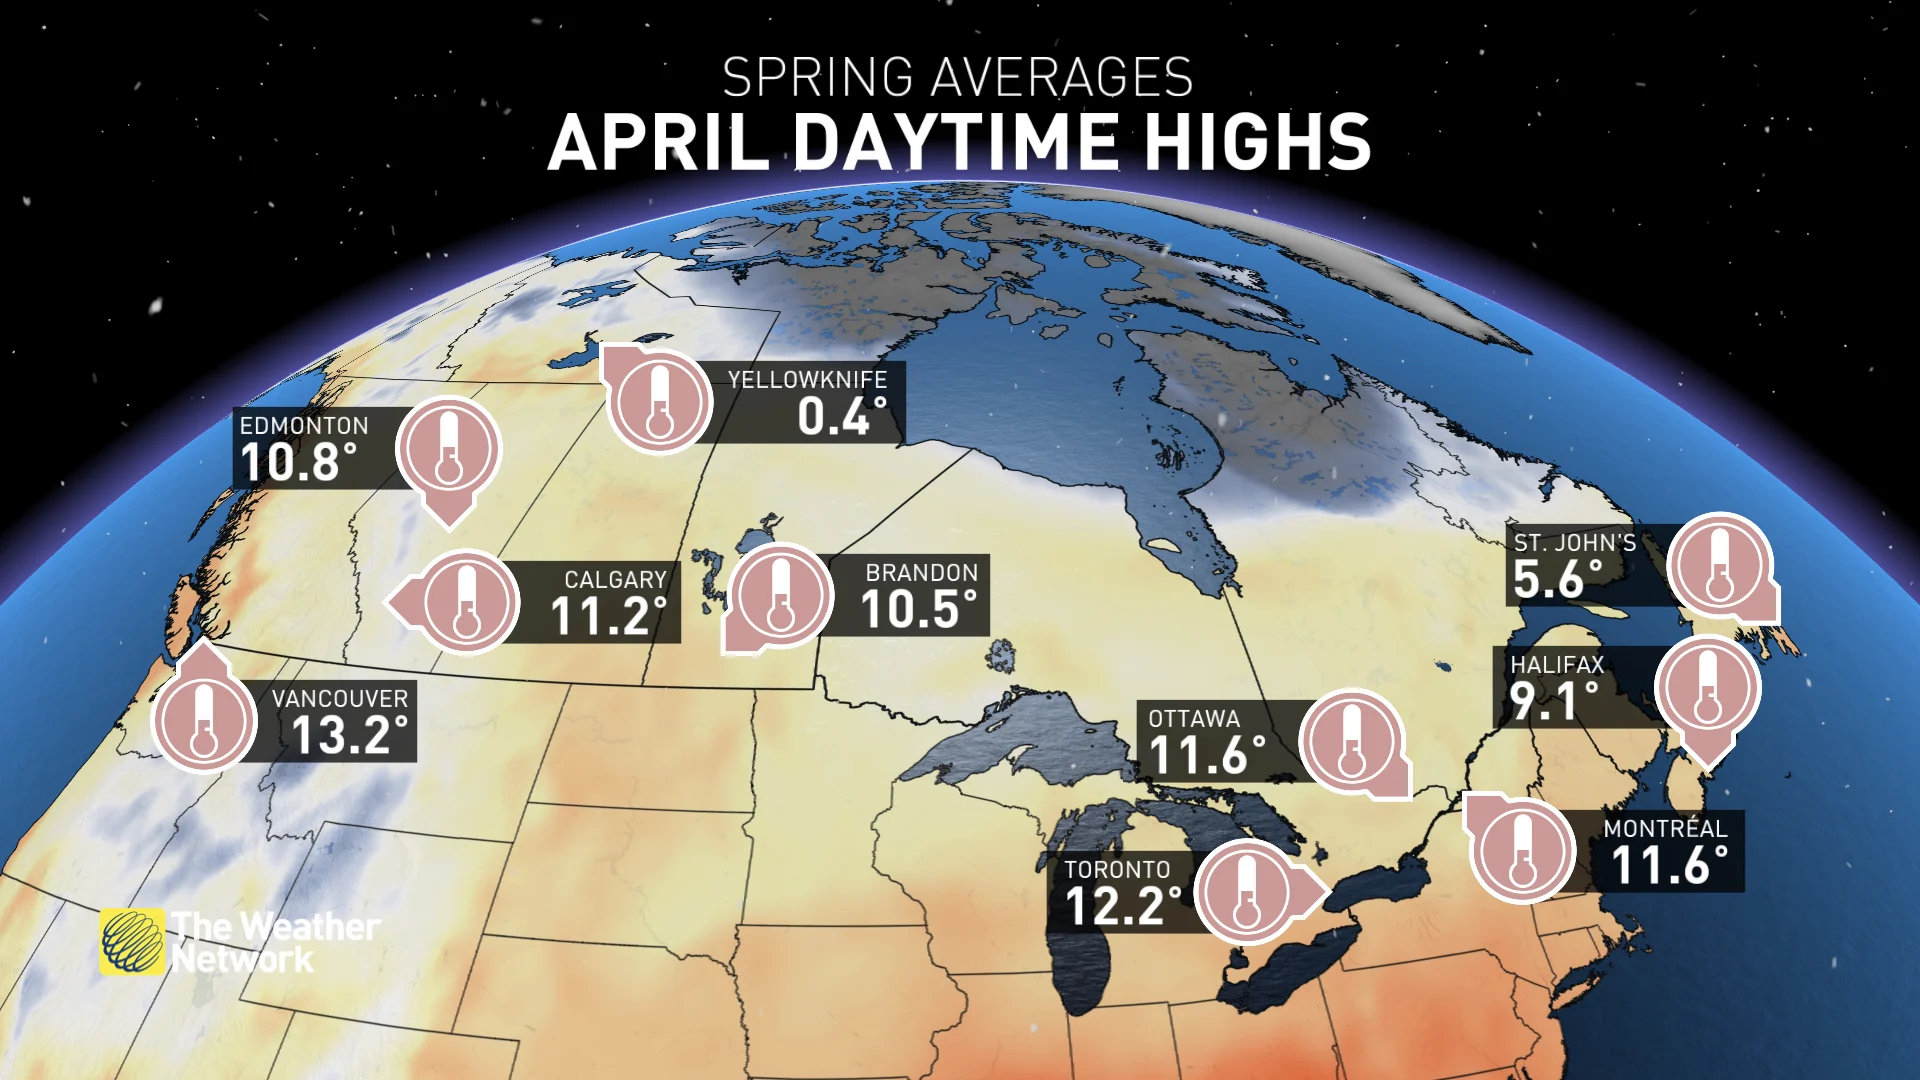 April daytime highs in spring, April 10